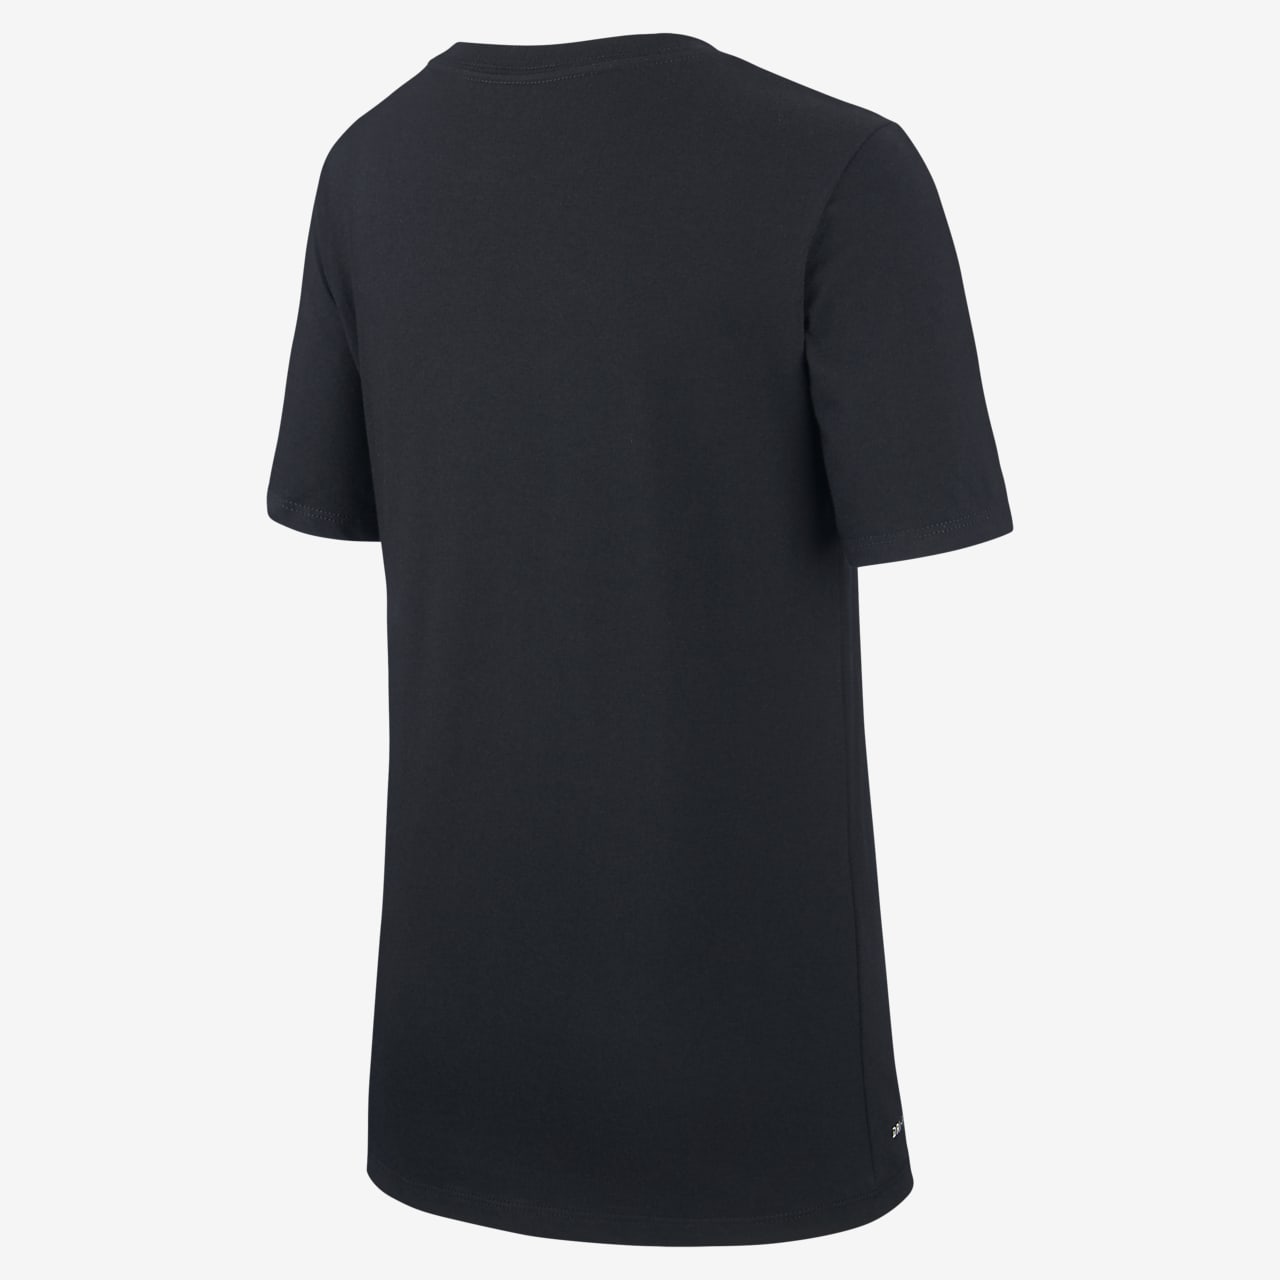 T-shirt Nike Dri-FIT (NFL Raiders 